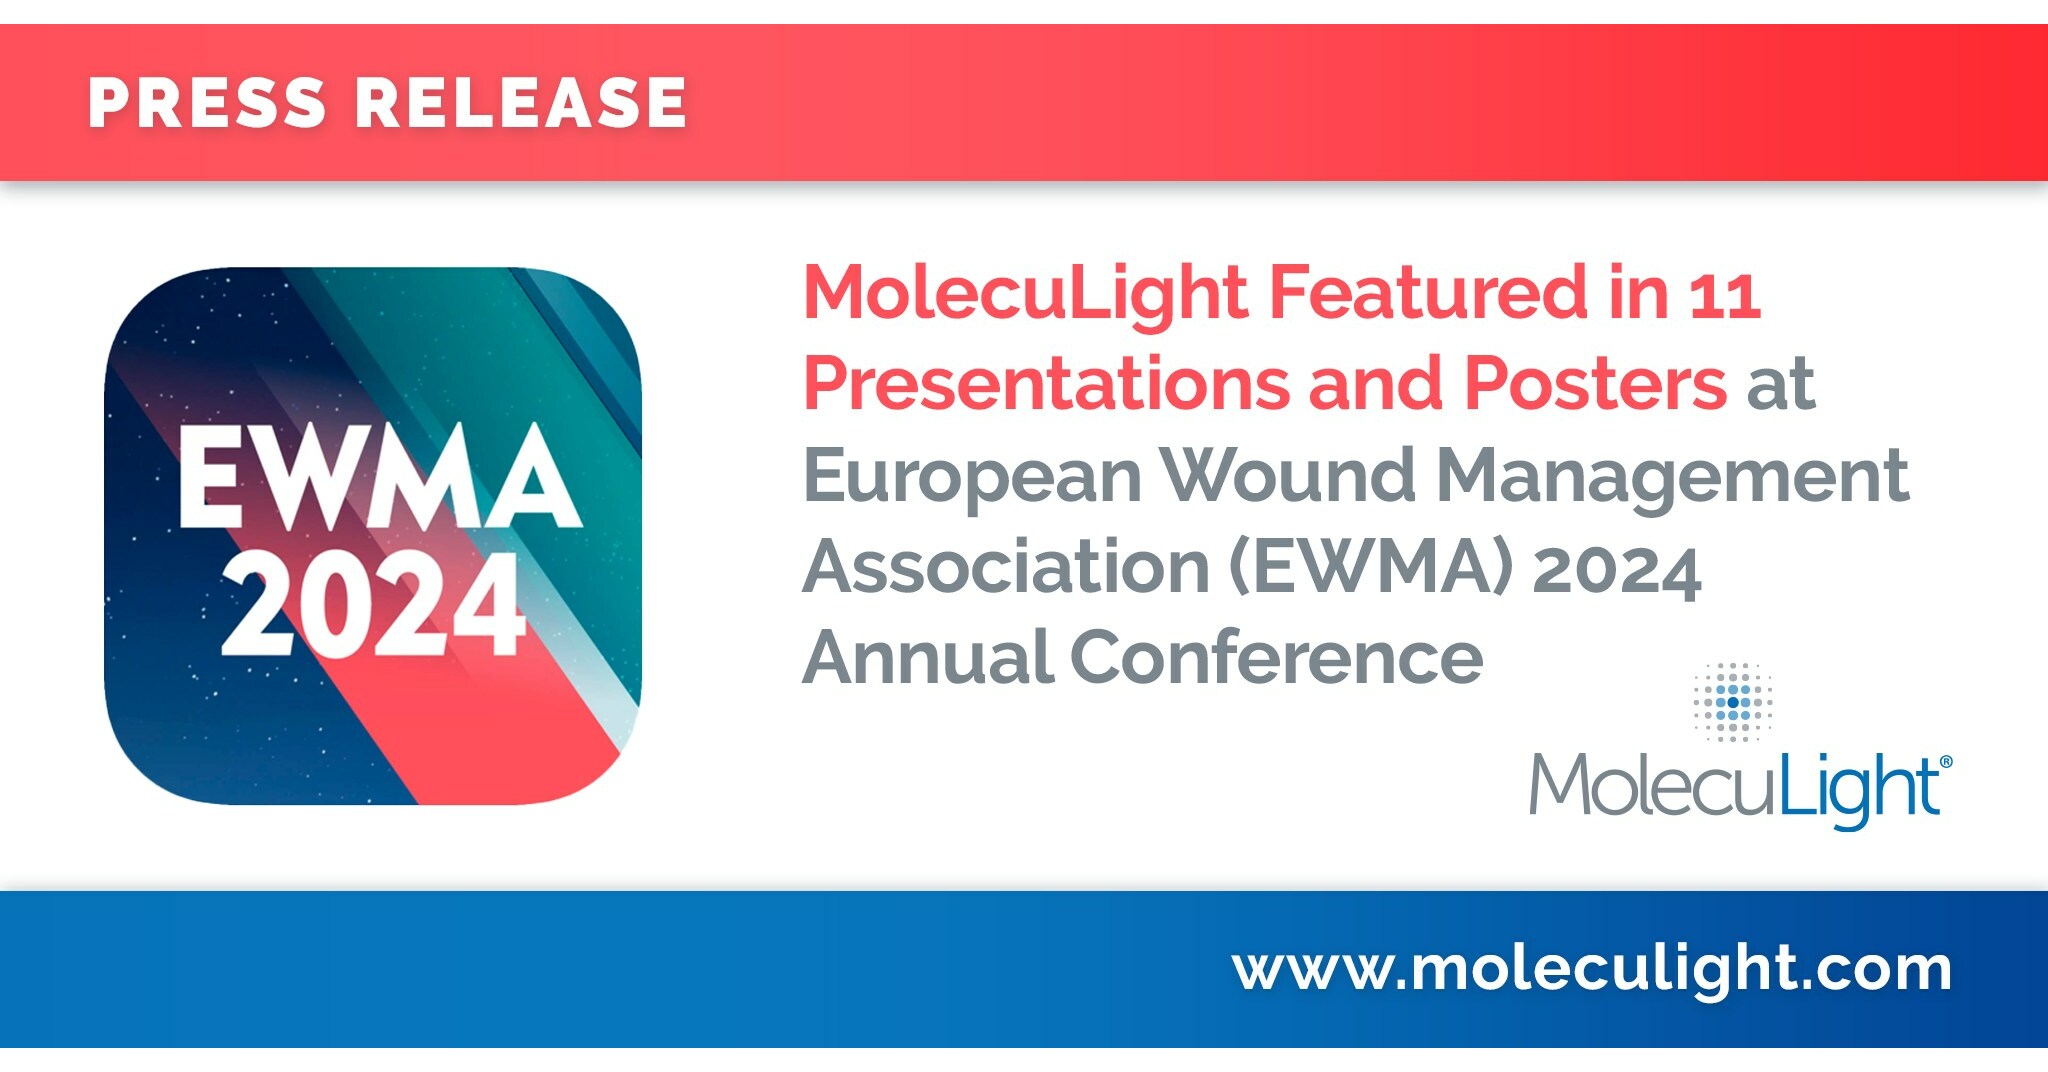 MolecuLight pojawił się w 11 prezentacjach i plakatach podczas dorocznego kongresu Europejskiego Stowarzyszenia Leczenia Ran (EWMA) 2024